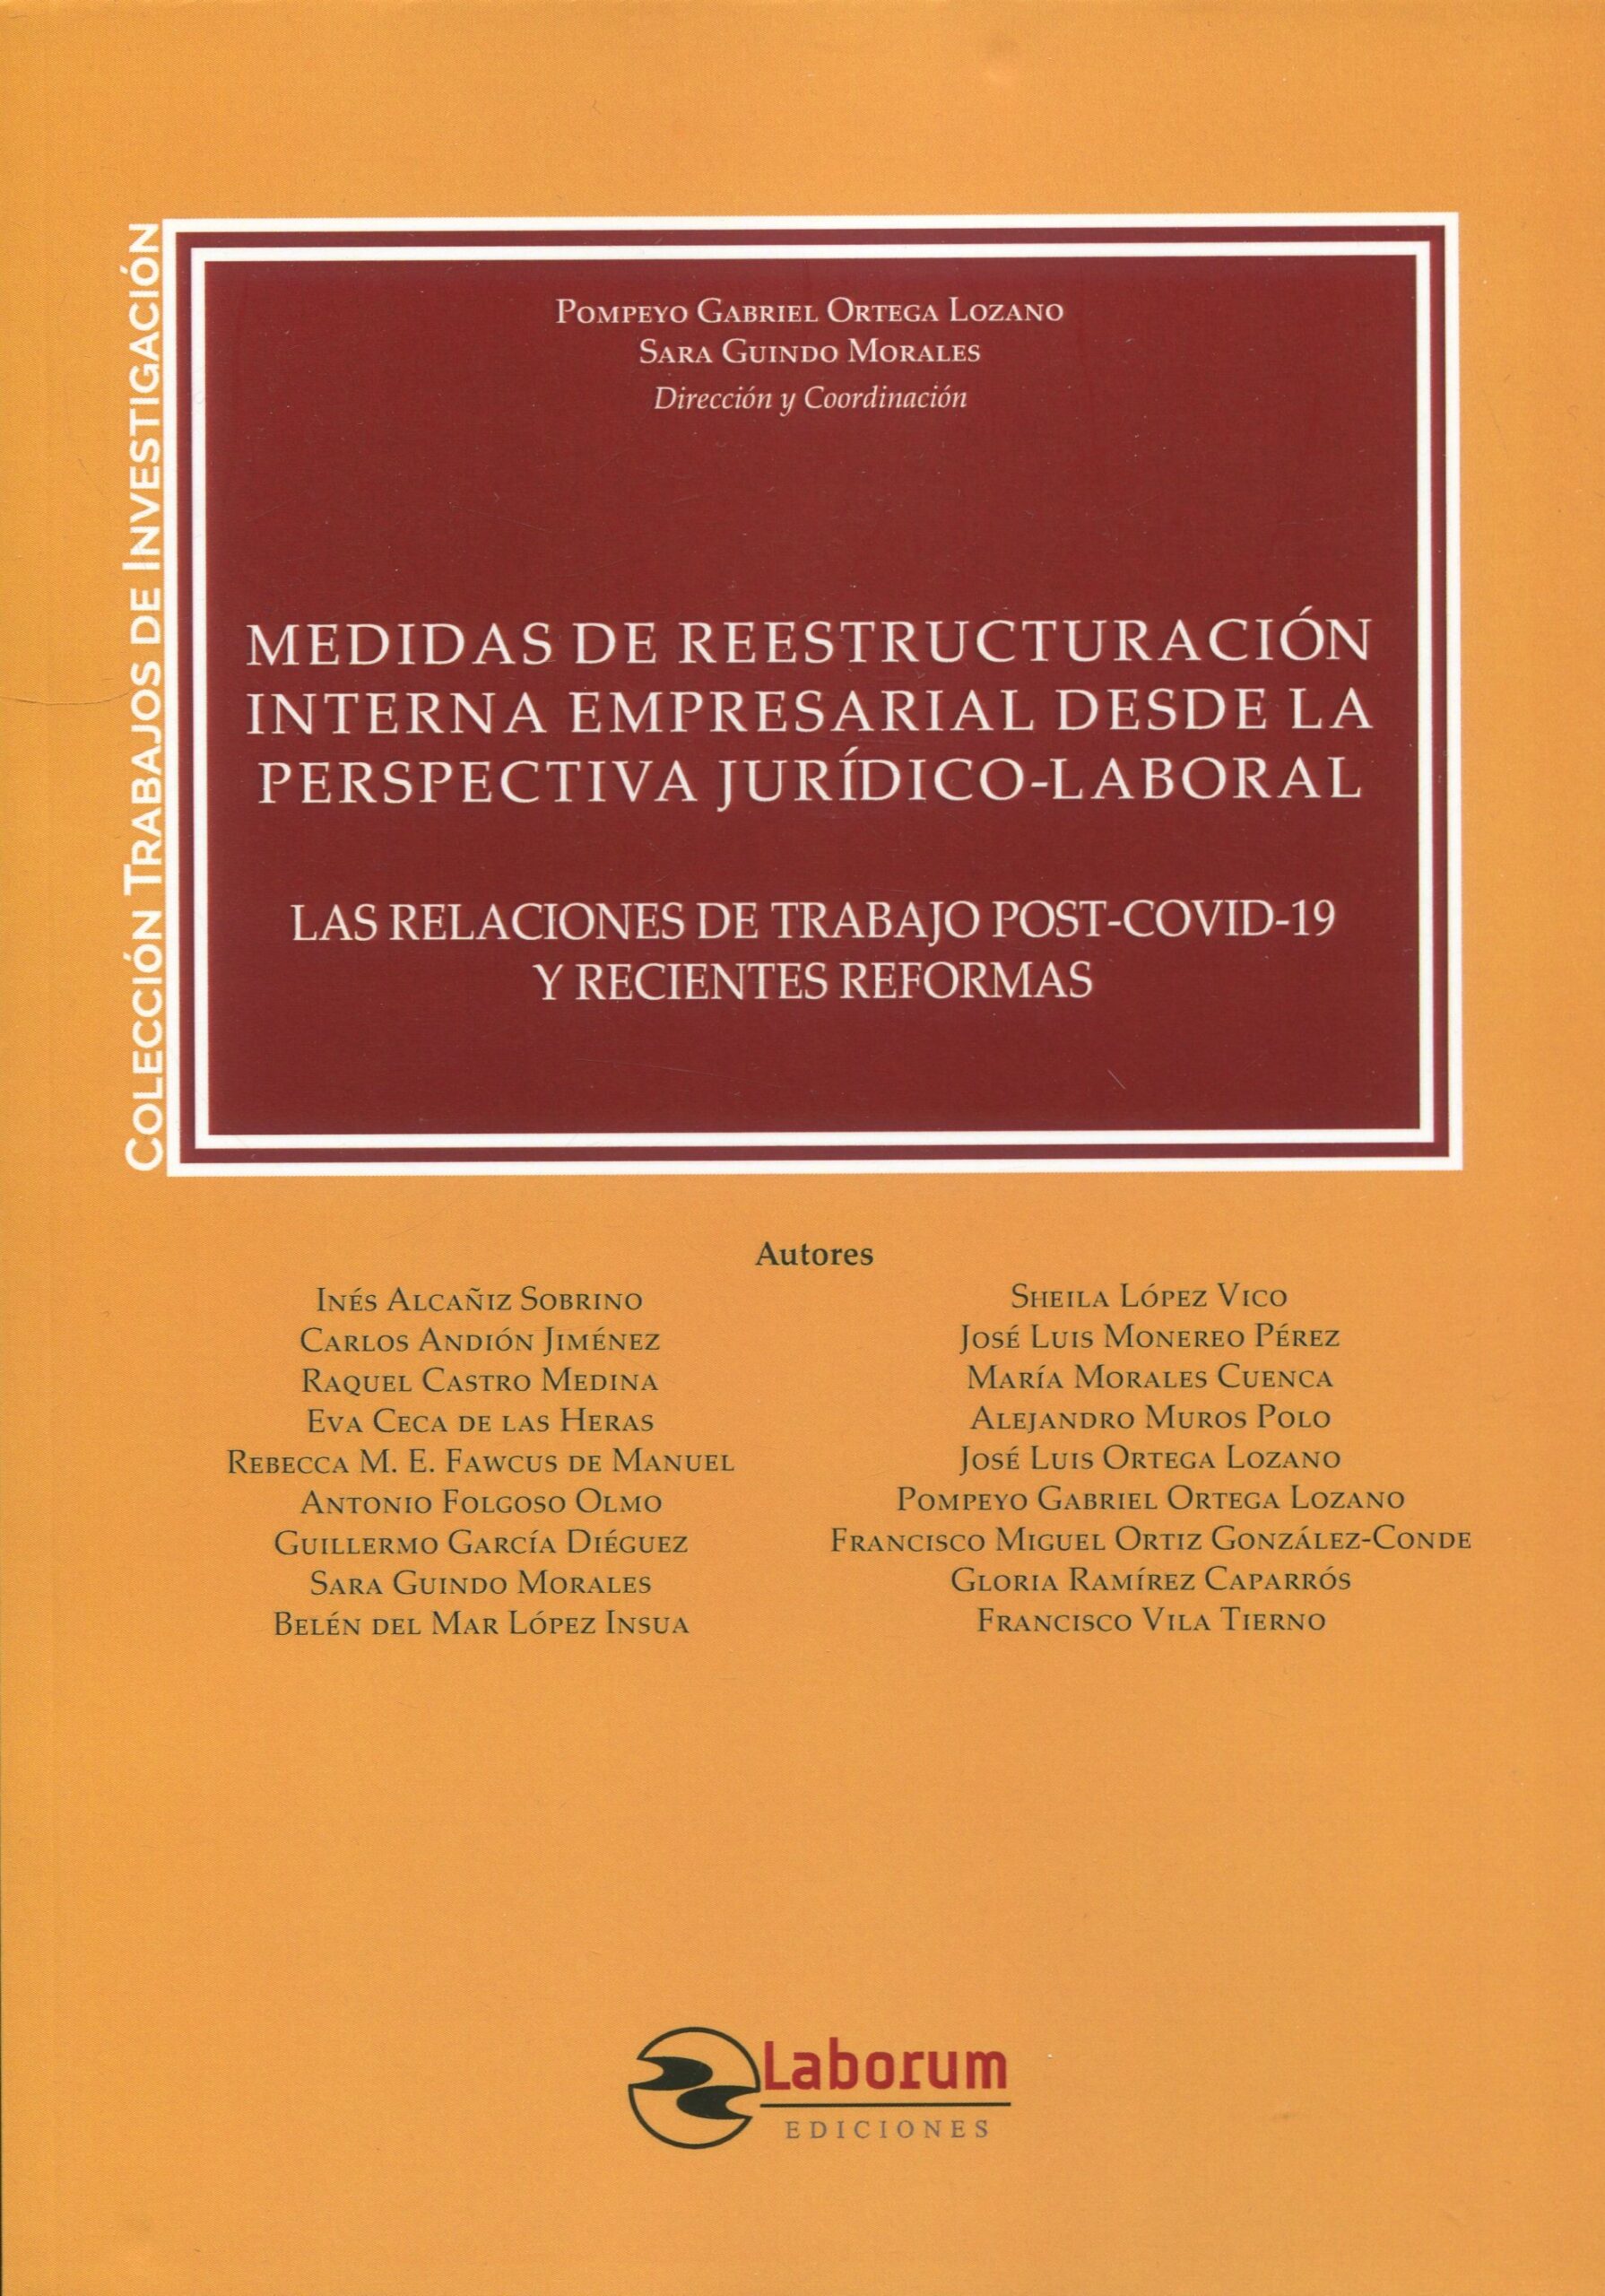 Imagen de portada del libro Medidas de reestructuración interna empresarial desde la perspectiva jurídico-laboral